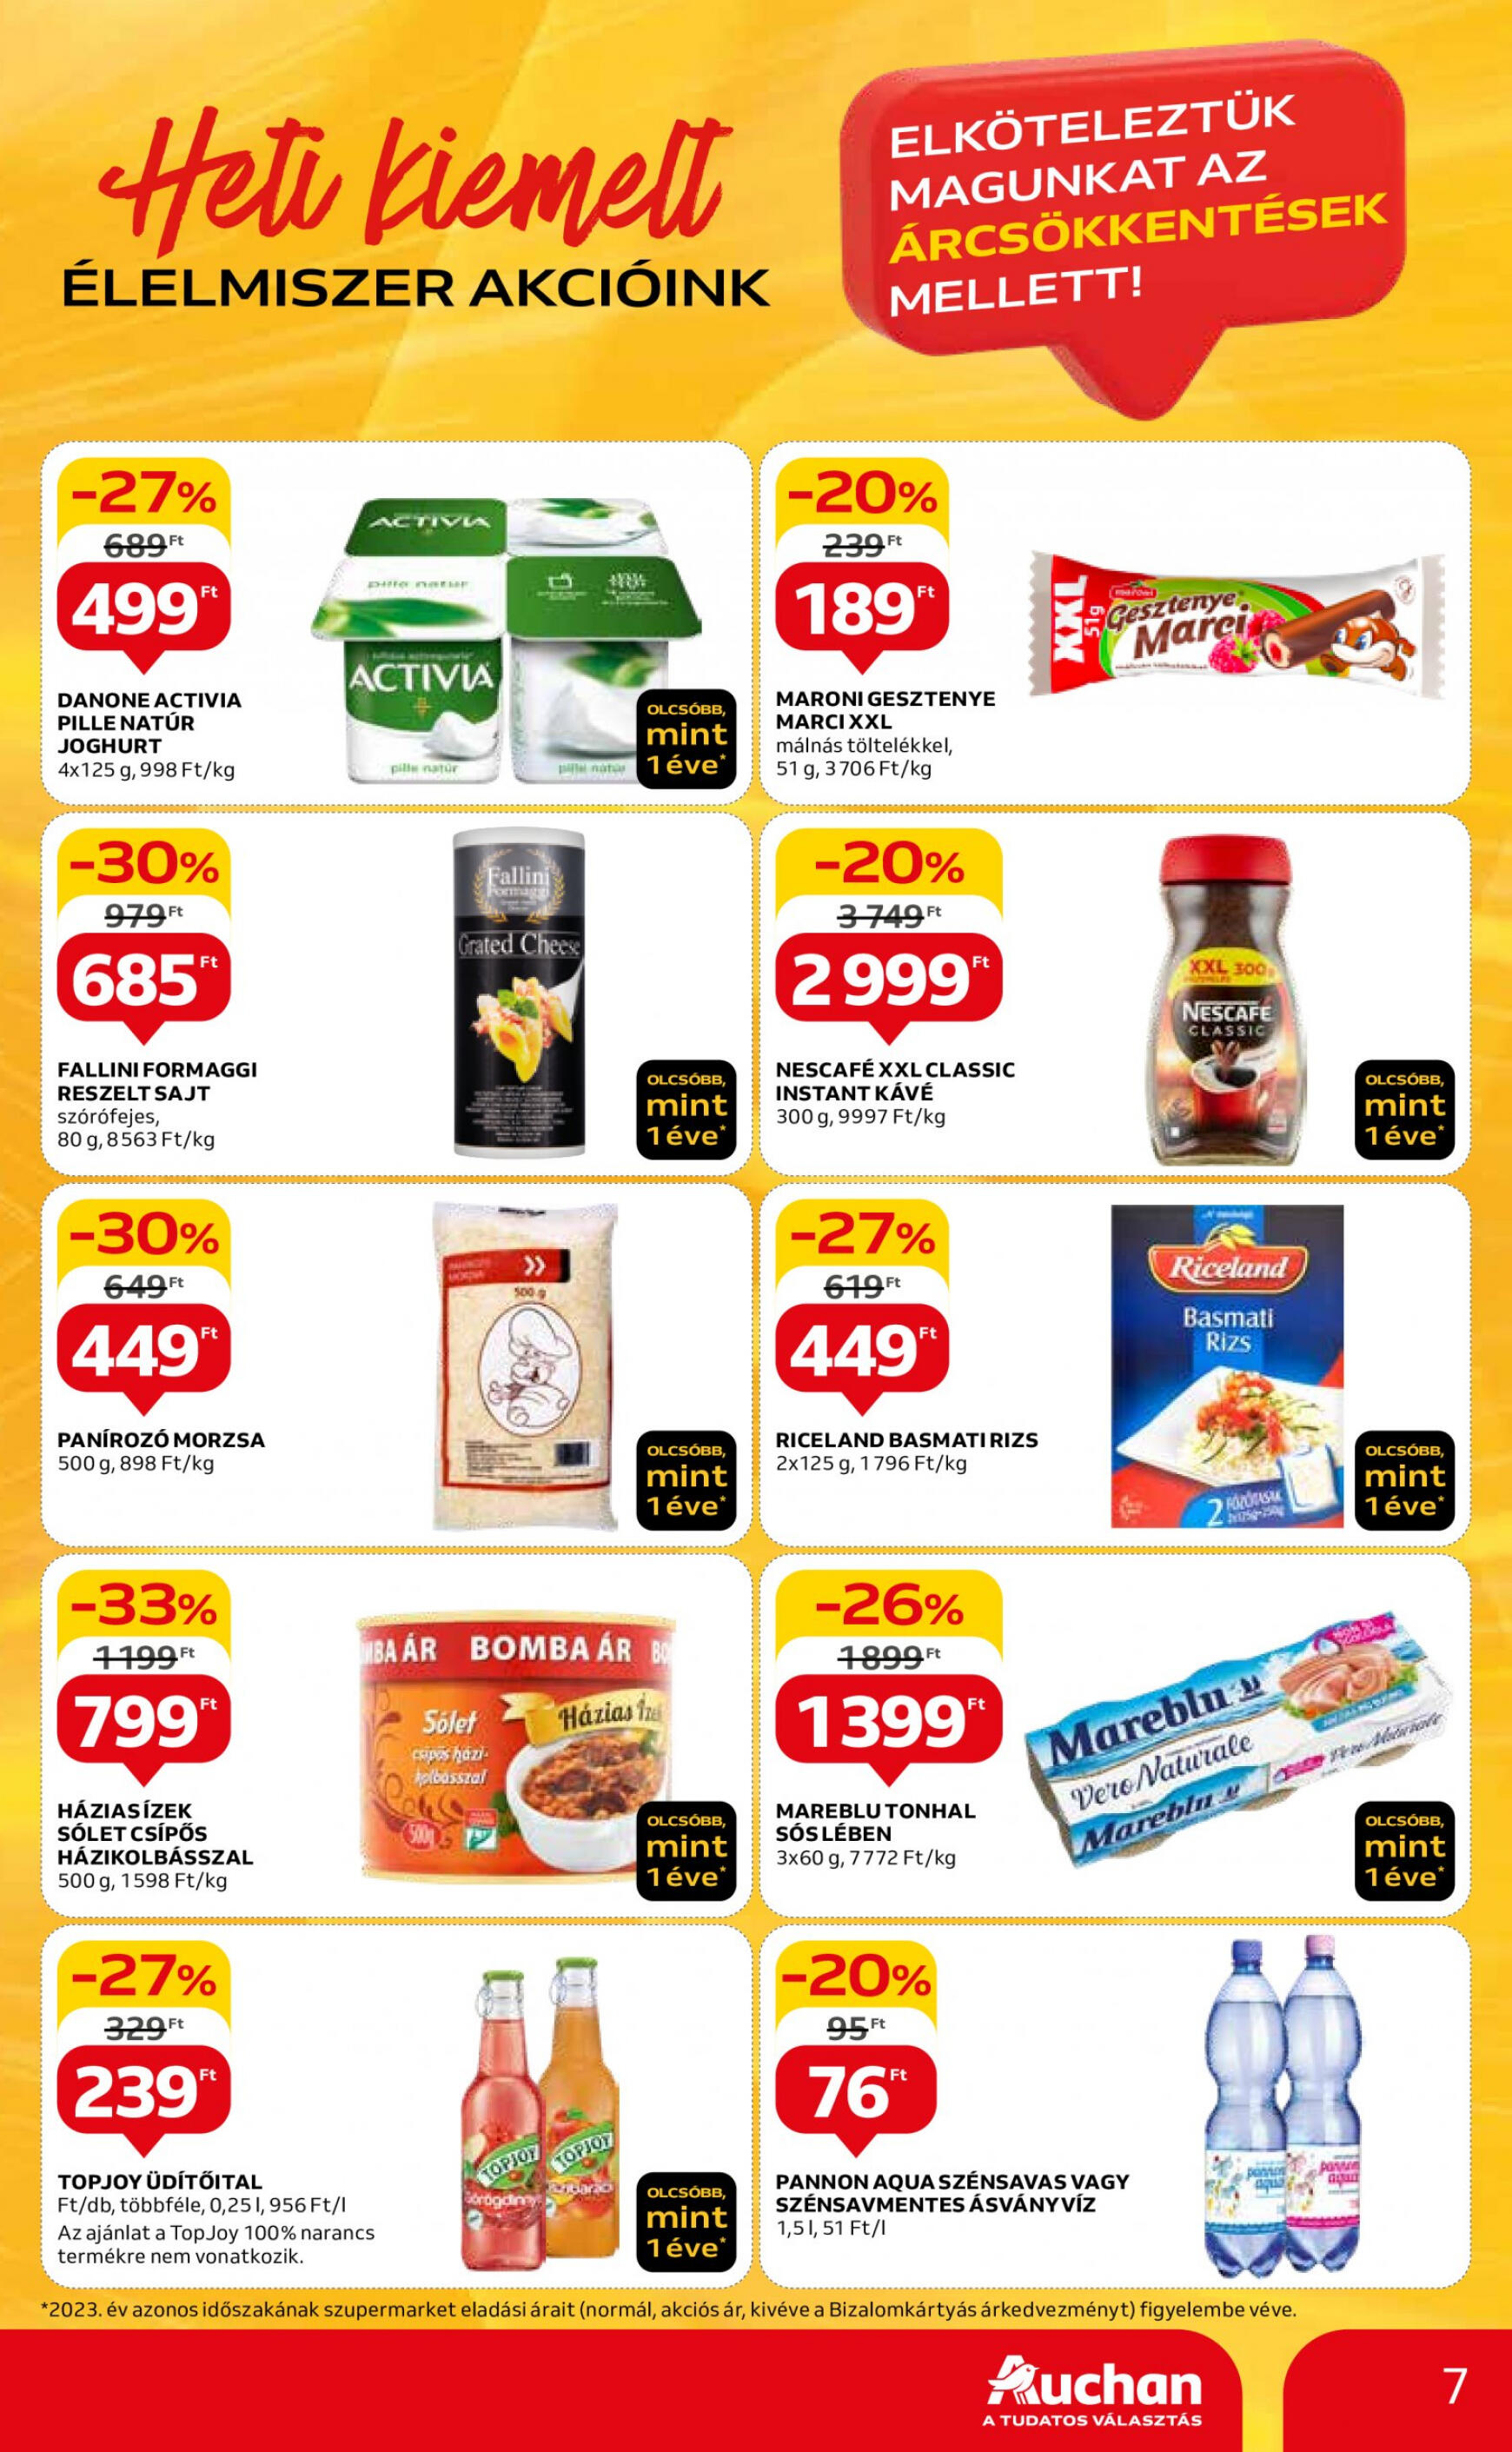 auchan - Aktuális újság Auchan szupermarket 05.16. - 05.22. - page: 7